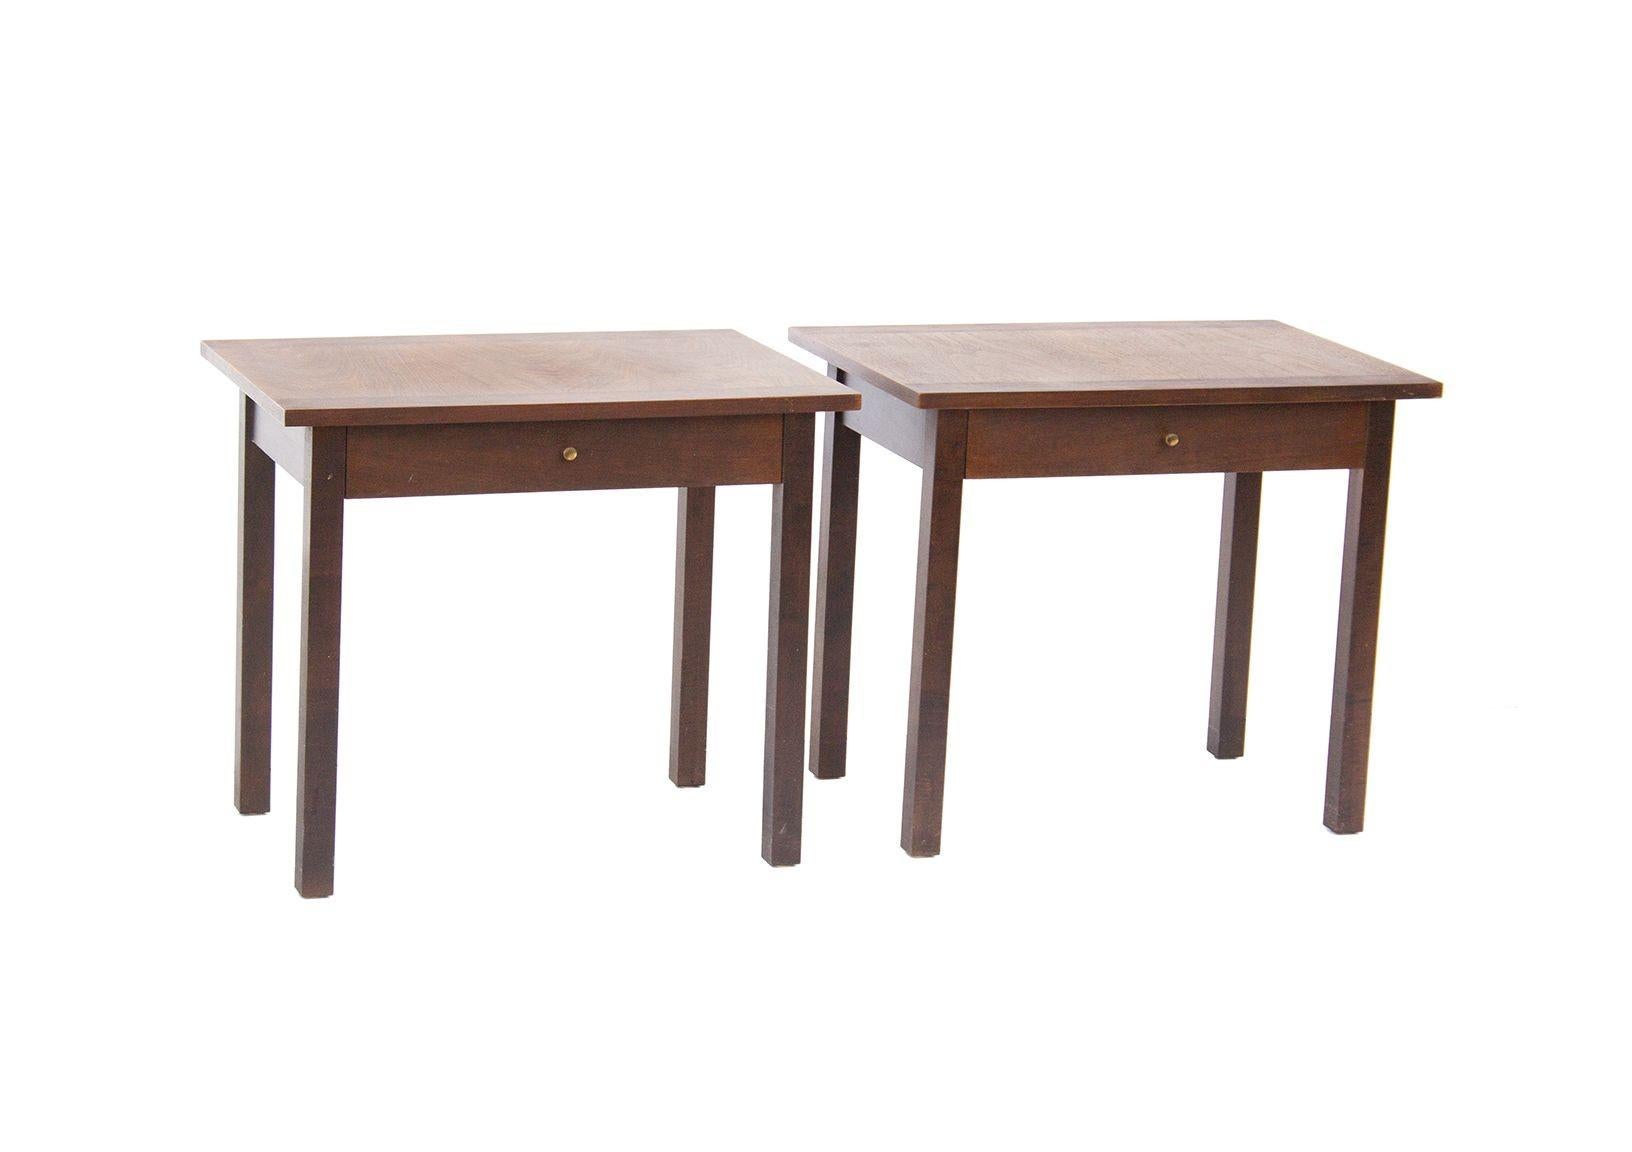 États-Unis, années 1960
Paire de tables de nuit en palissandre et noyer, chacune avec un seul tiroir. Dessus en palissandre et noyer à motifs. Très similaire aux styles de Paul McCobb. Aucune marque de fabricant sur cette paire, à l'exception des